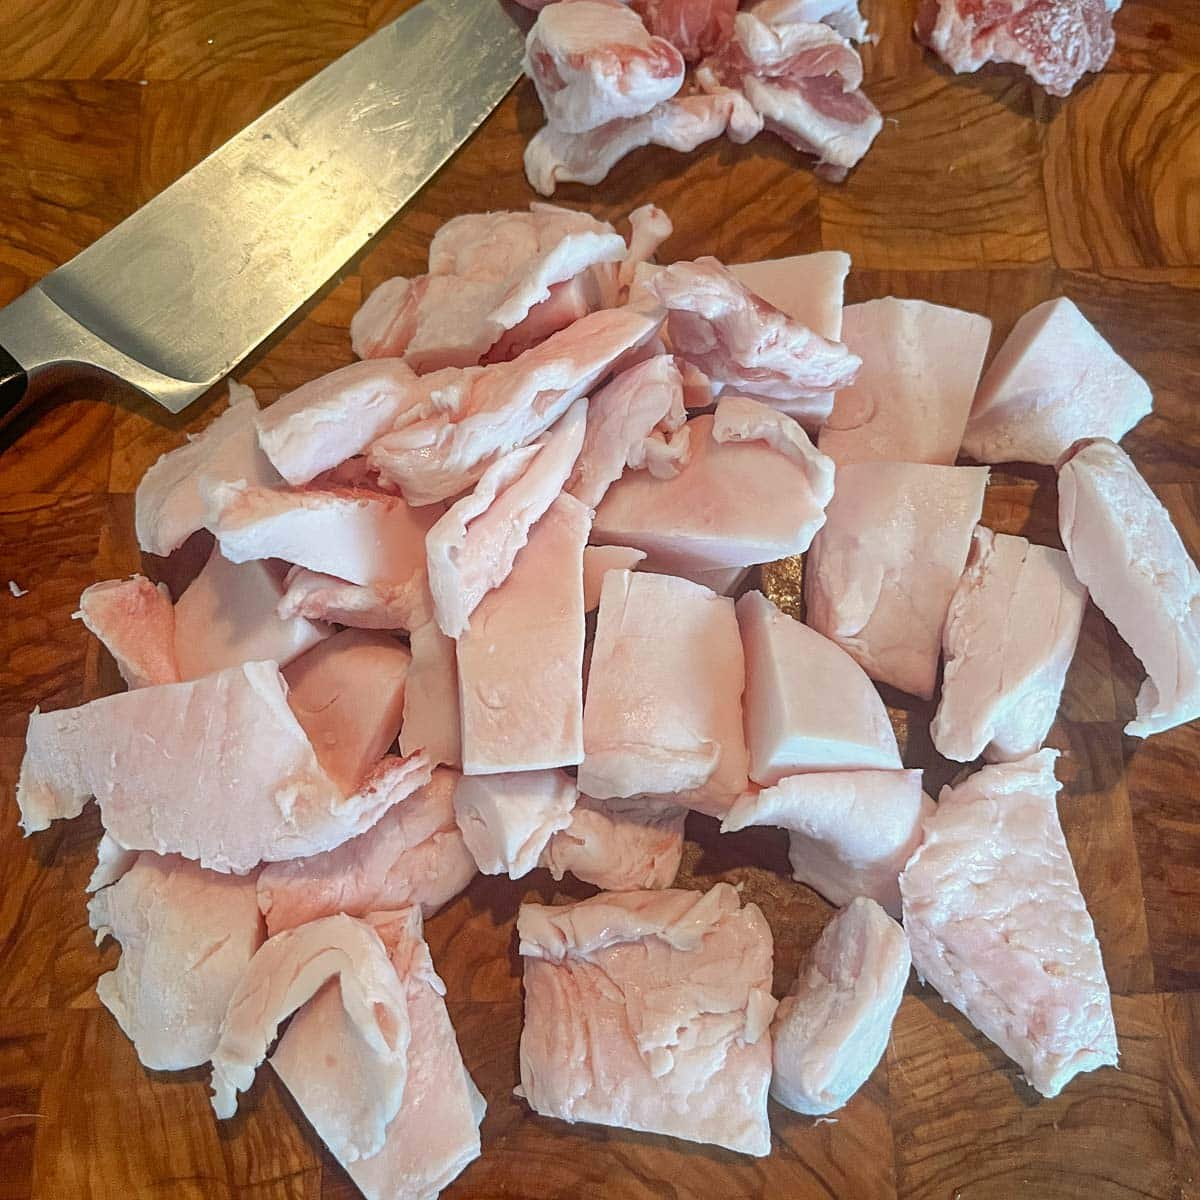 cubed pork fat on a cutting board